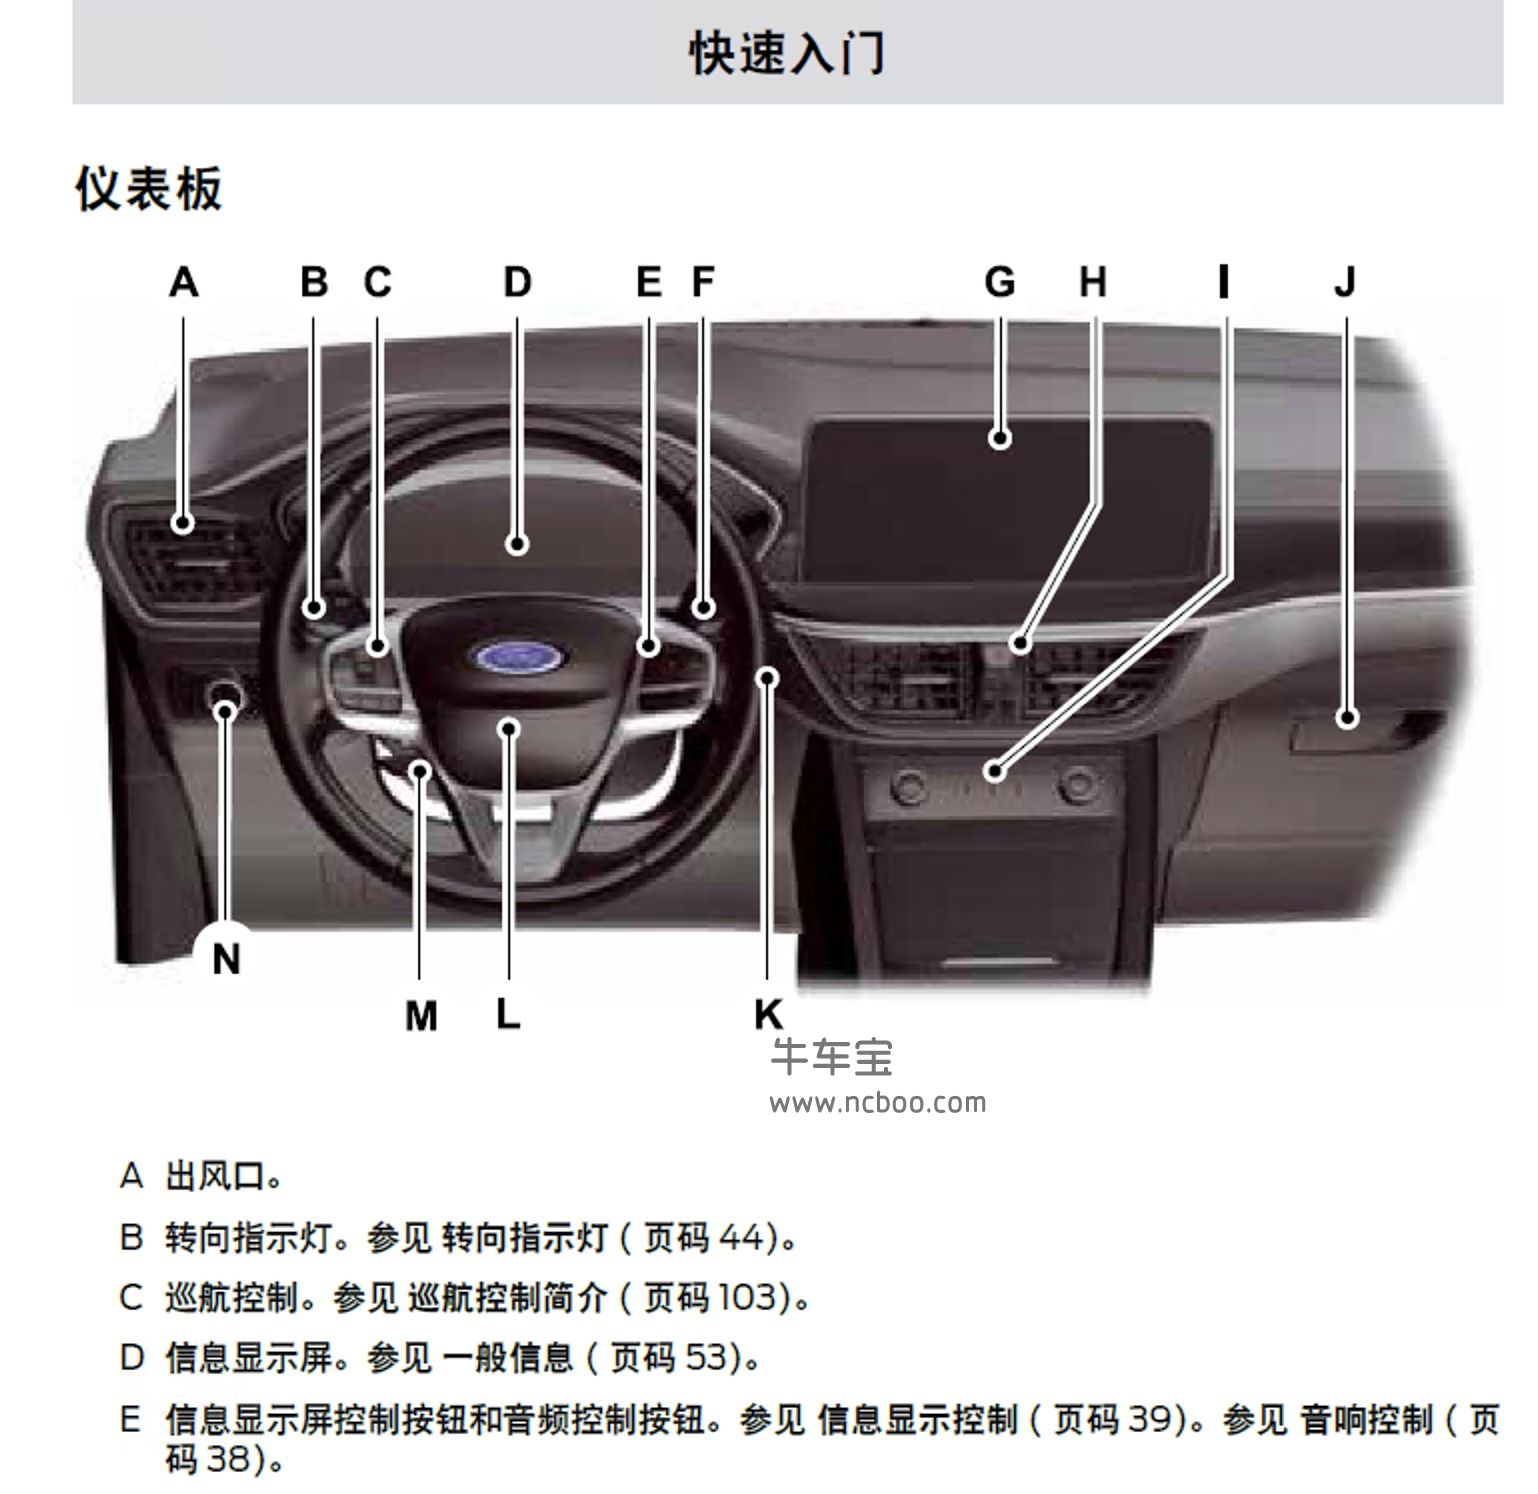 2021款福特锐际插电混动版车主手册-产品使用说明书pdf下载